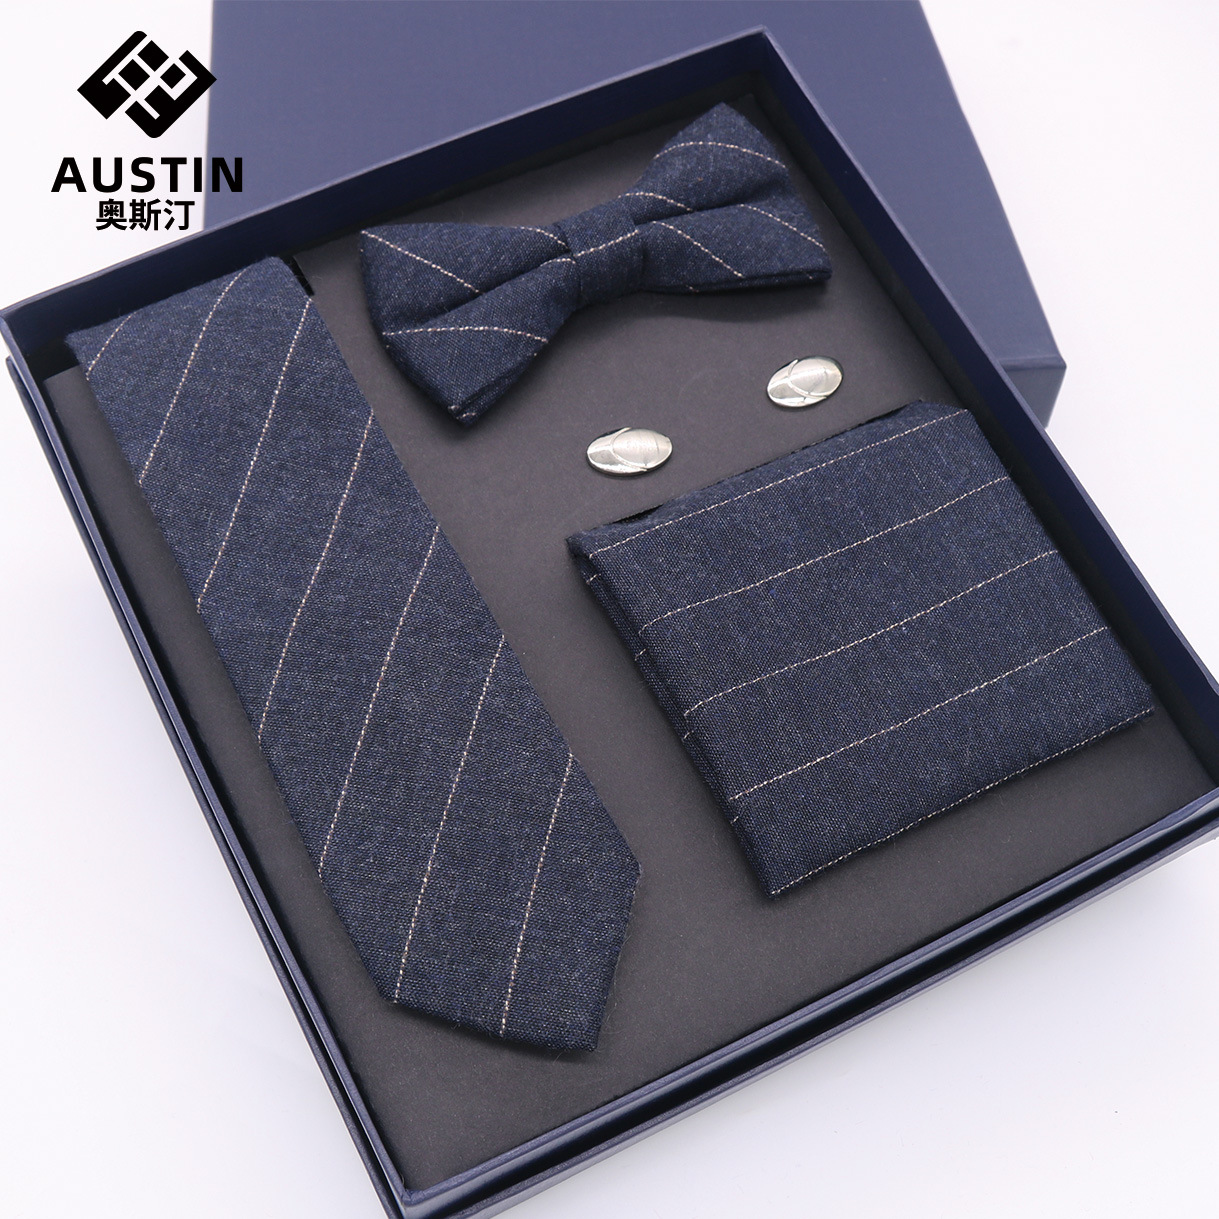 新款棉韩式休闲窄版男士领带套装条纹正装商务职业批发加工定制领